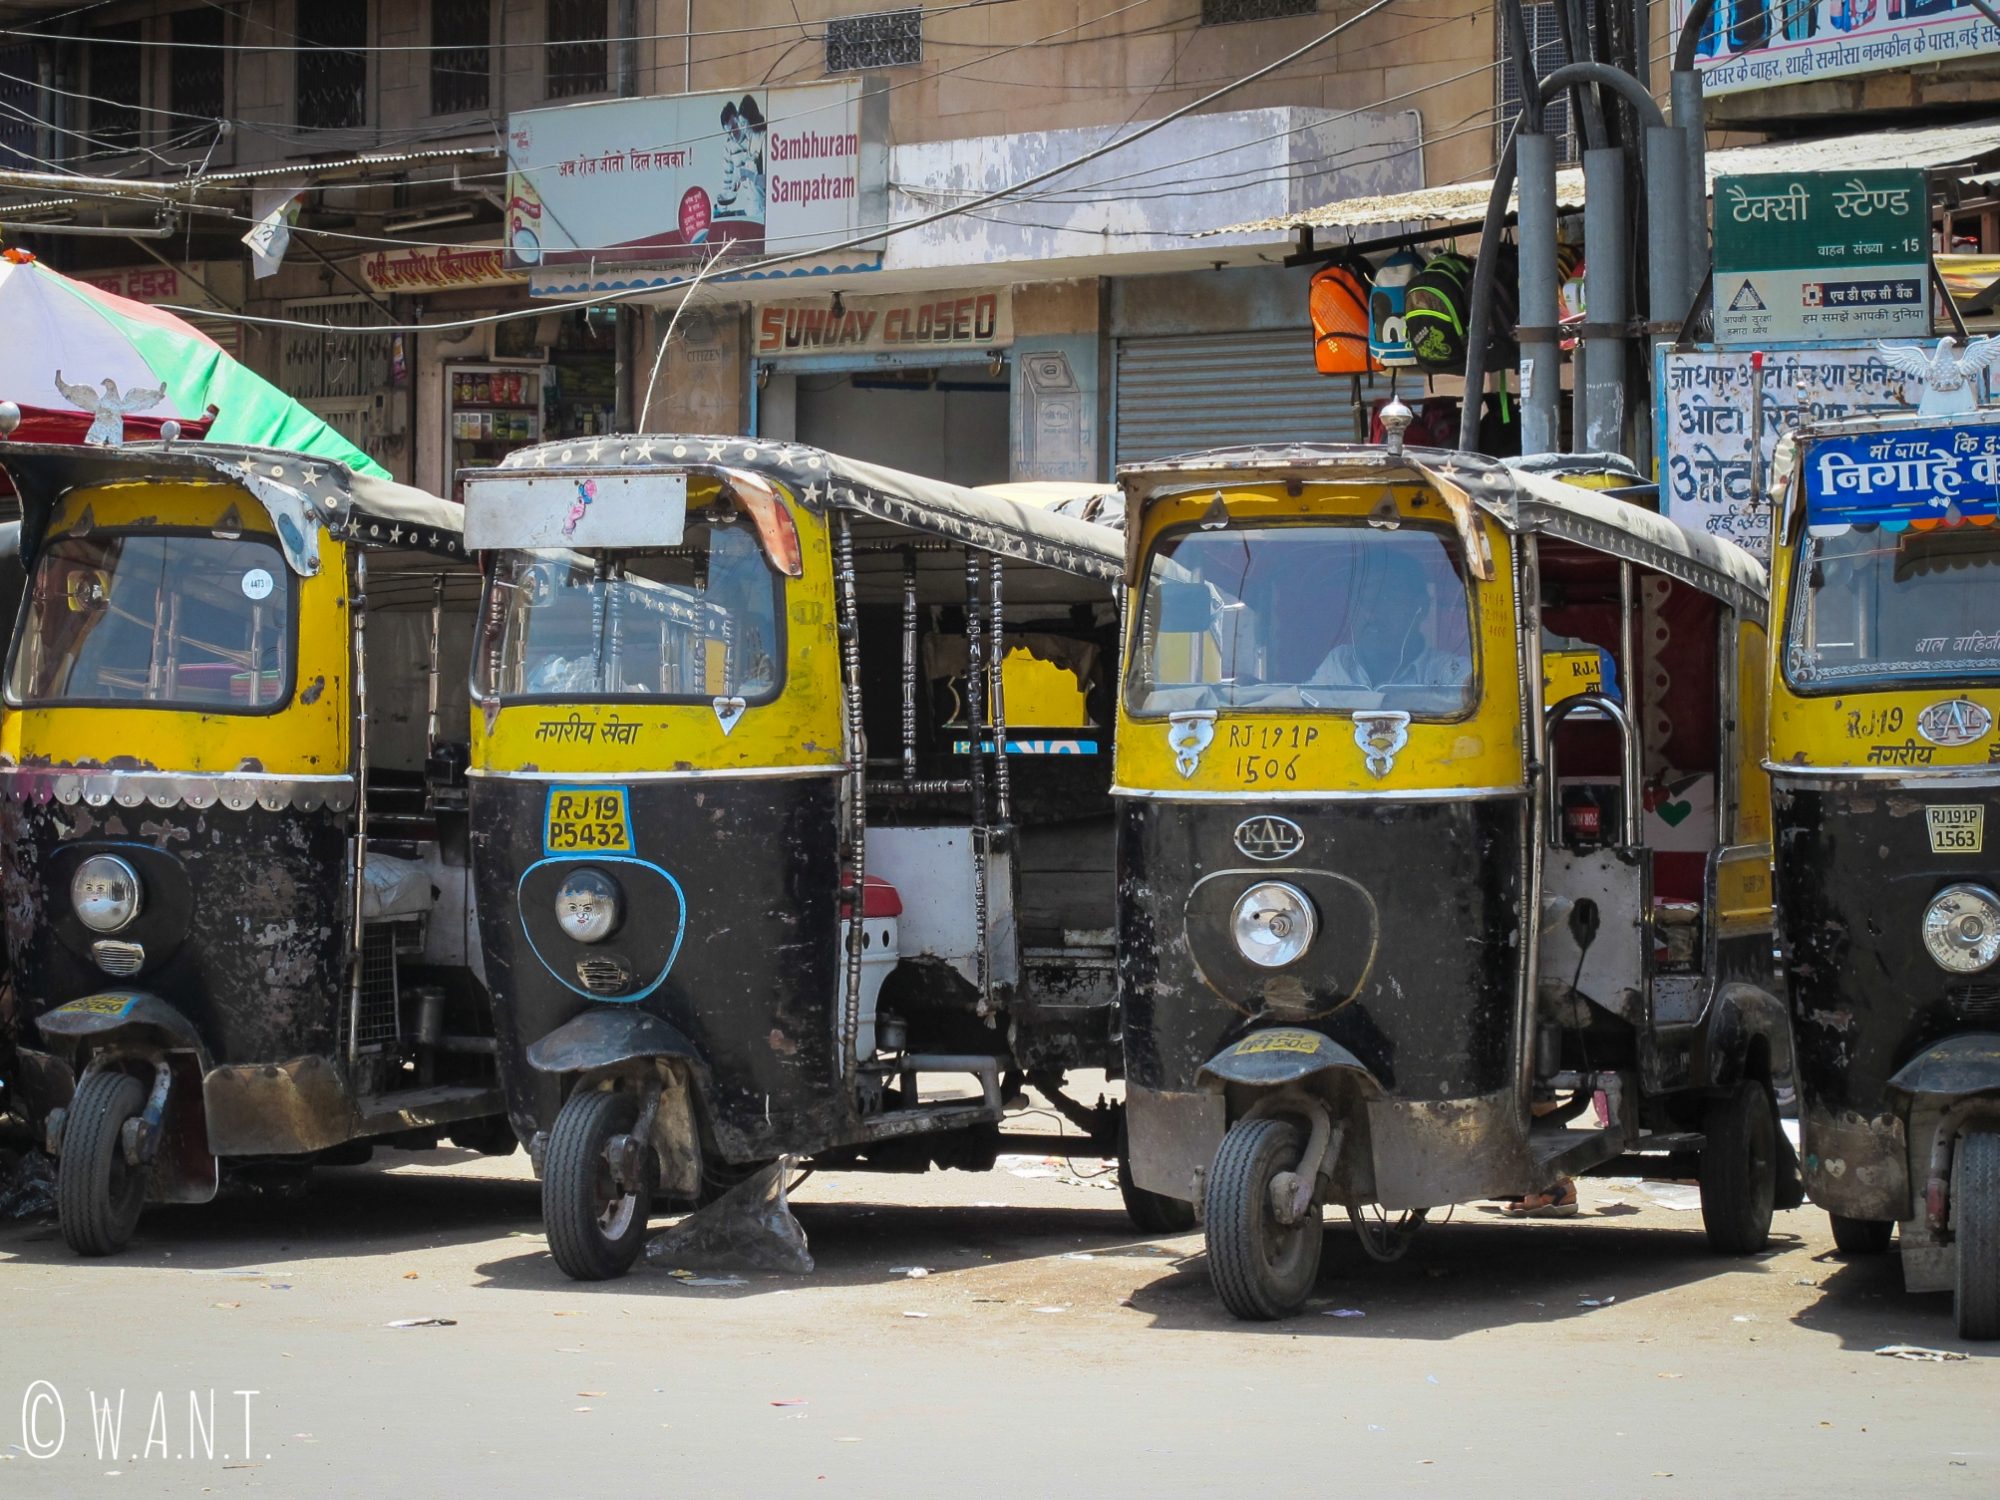 Les chauffeurs de rickshaws nous interpellent à chaque sortie dans les rues de Jodhpur